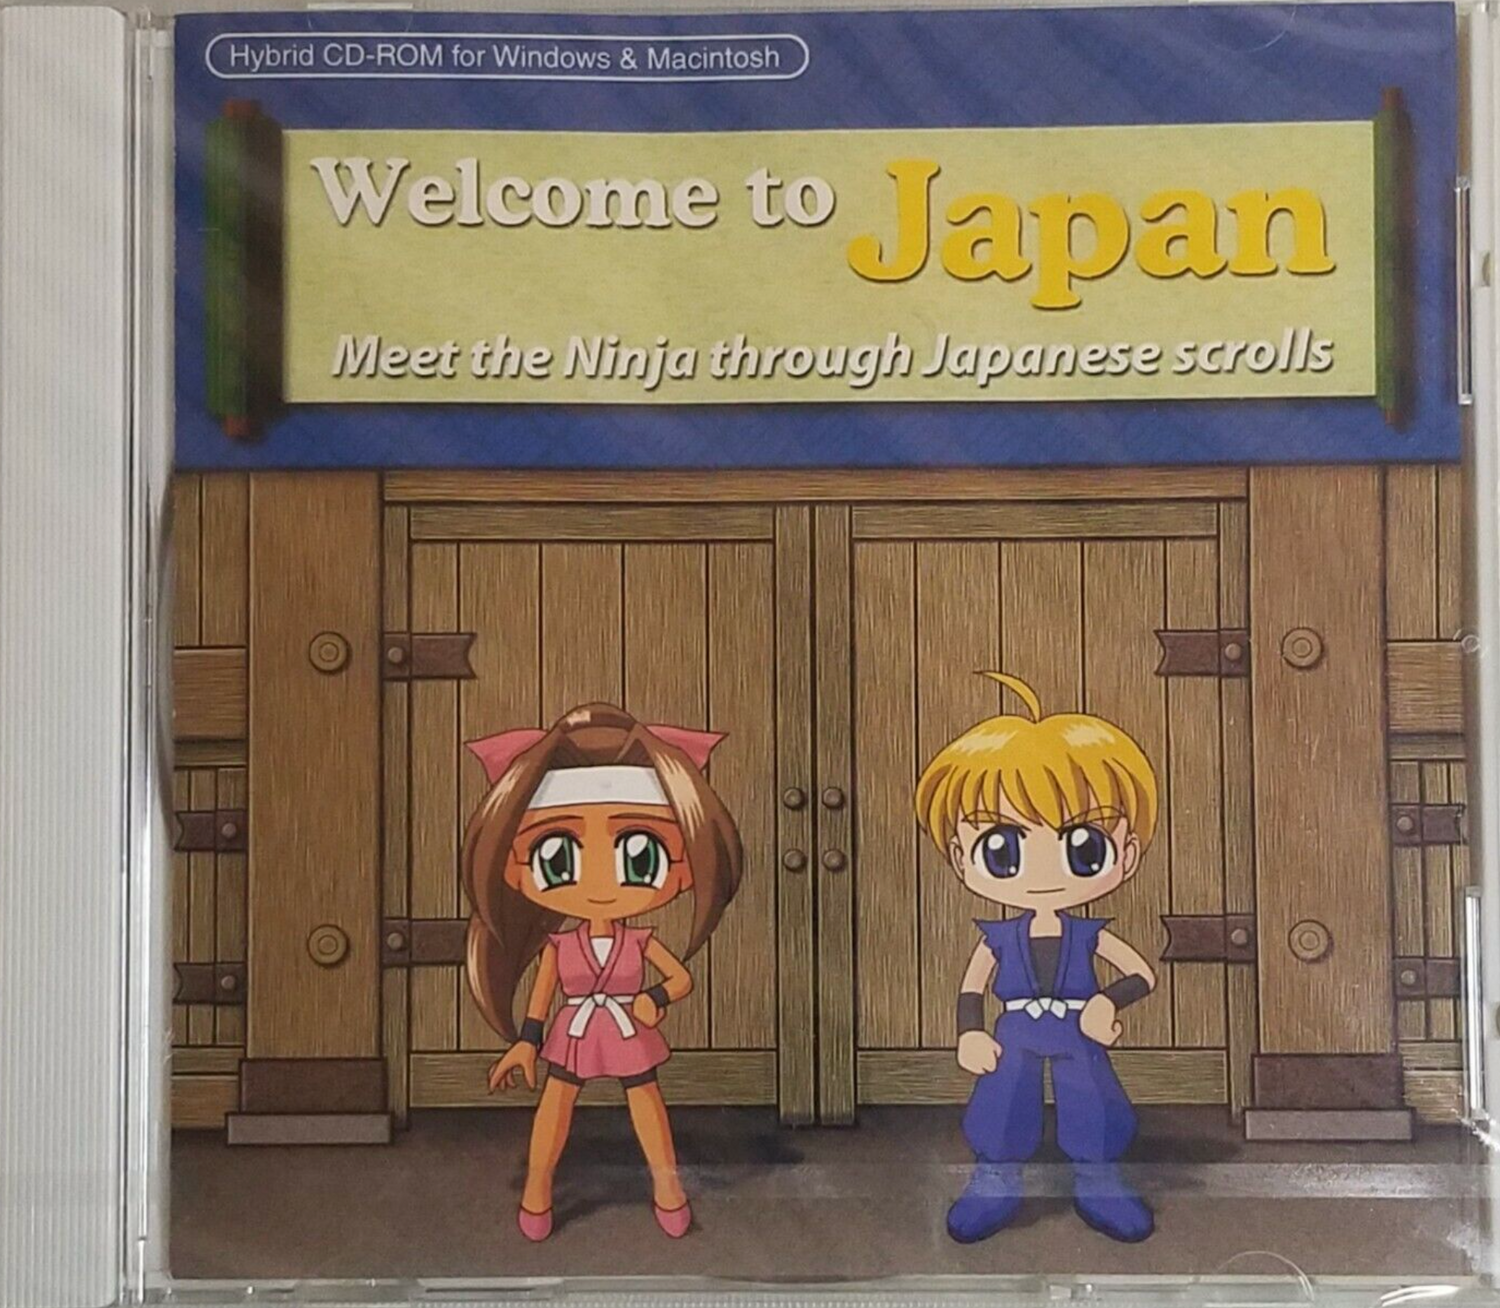 ようこそ日本へ: 日本語巻物 CD ROM で忍者に会いましょう